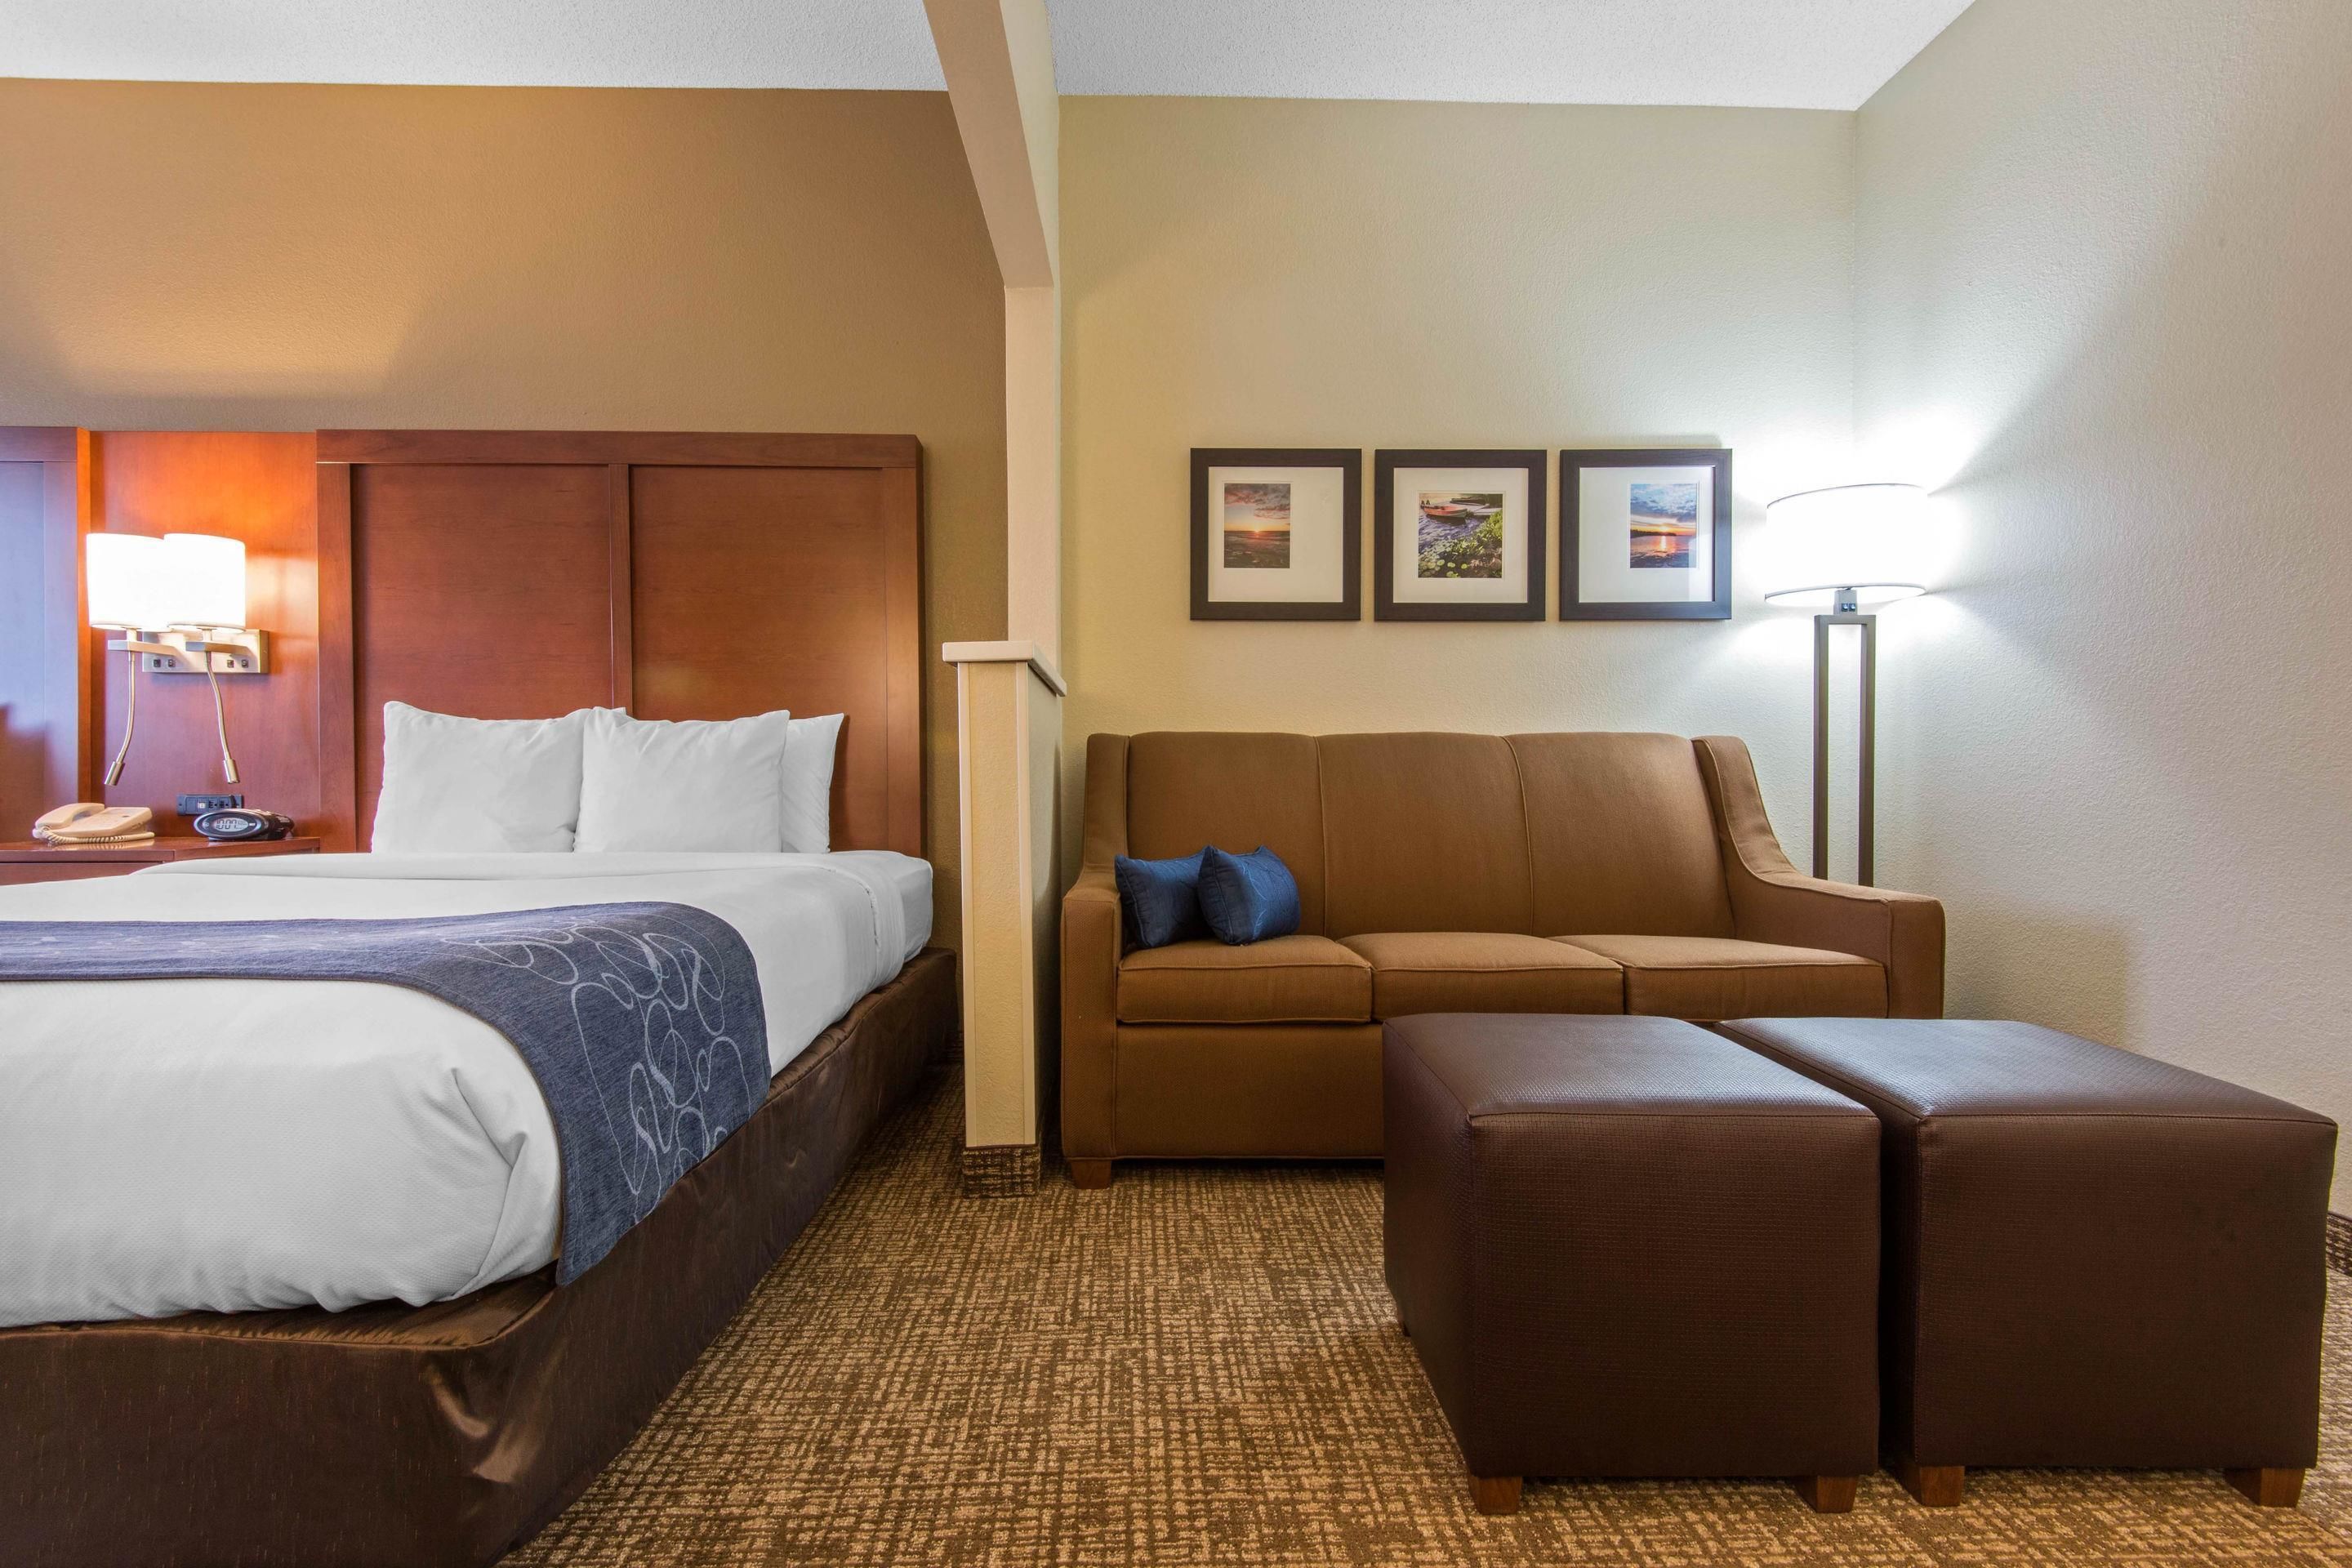 Comfort Suites Rochester